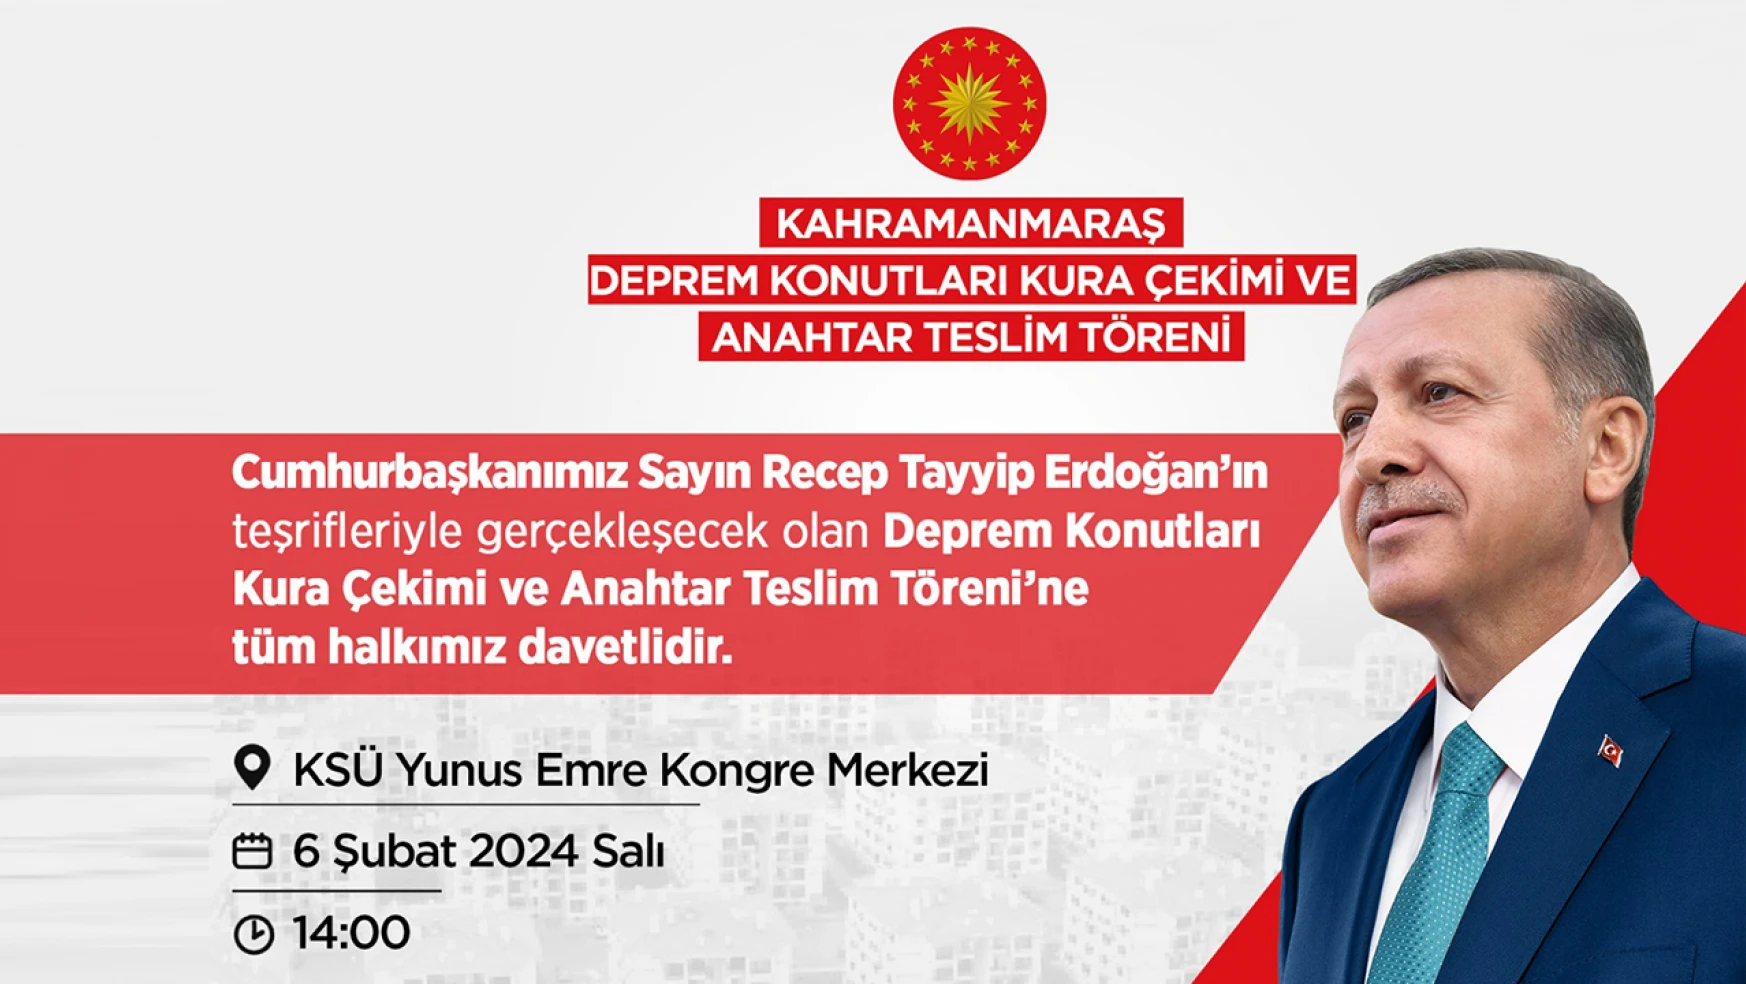 Cumhurbaşkanı Erdoğan, Asrın Felaketinin yıl dönümünde Kahramanmaraş'a geliyor